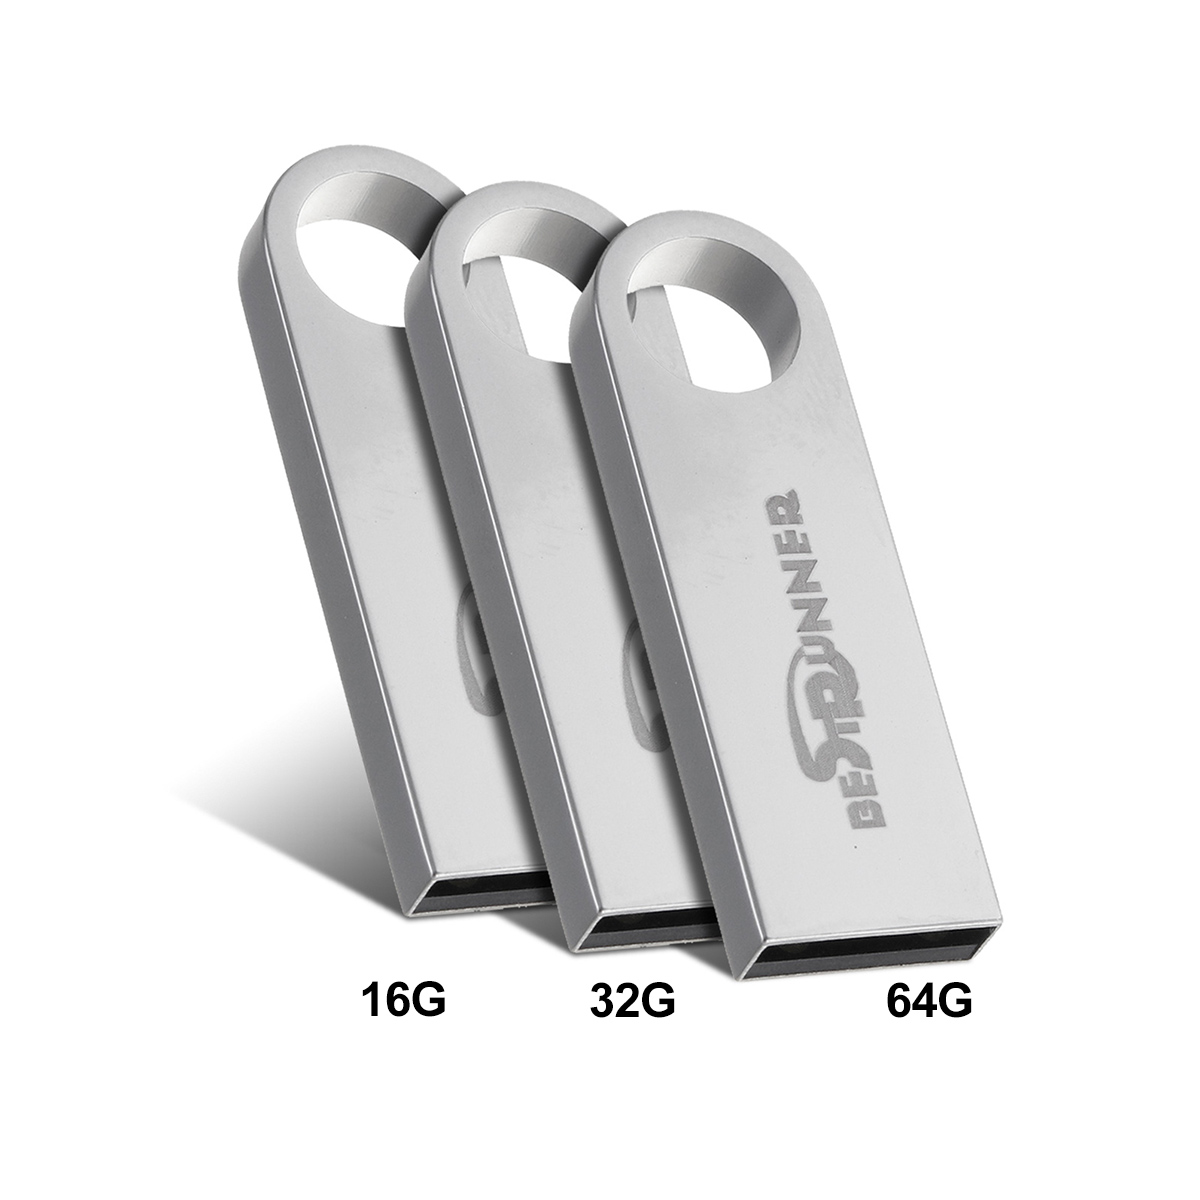 3264GB-USB-20-Flash-Drive-Metal-Flash-Memory-Card-USB-Stick-Pen-Drive-U-Disk-1714615-2